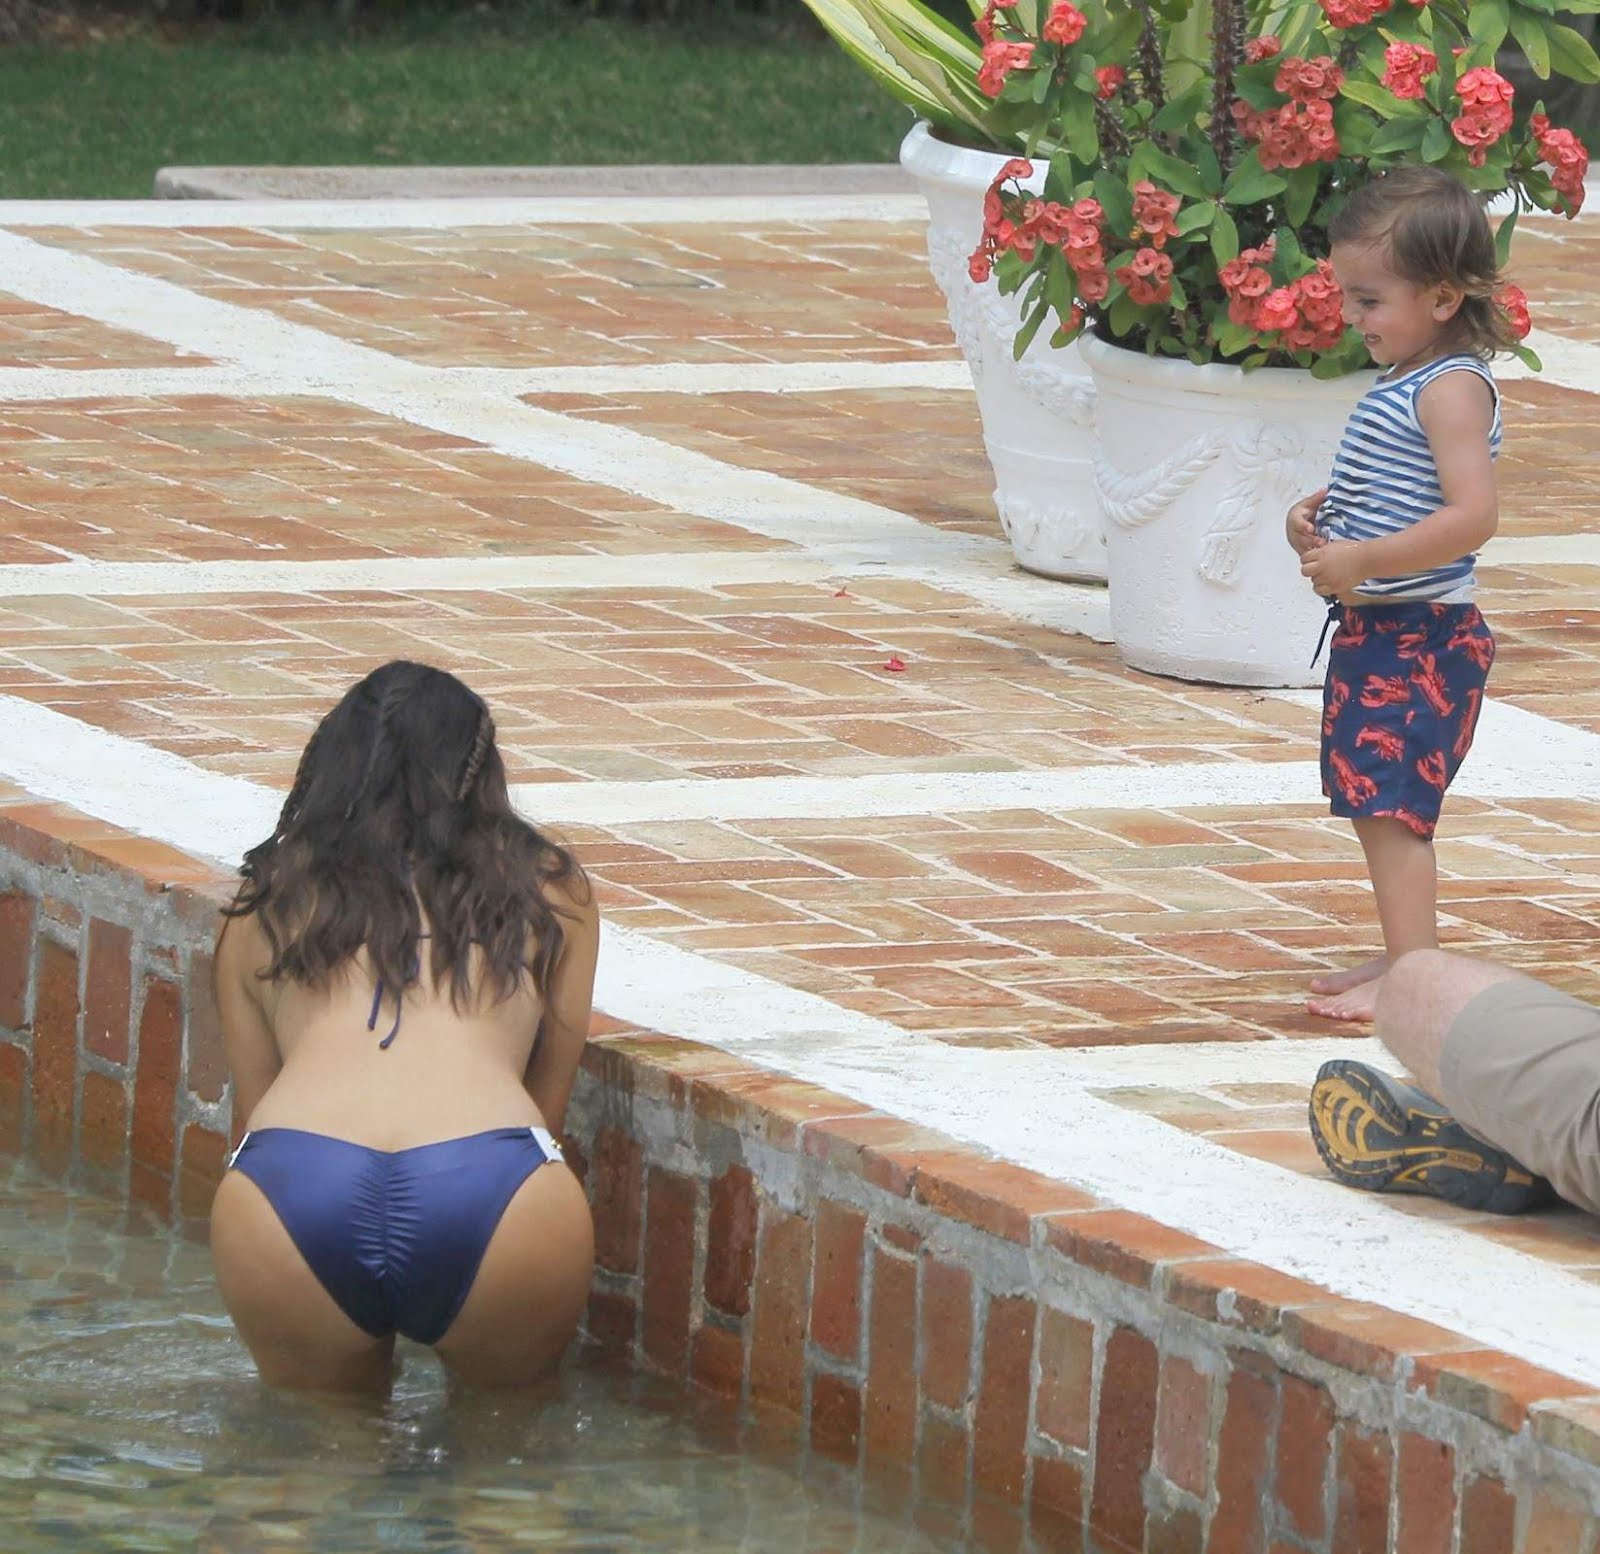 Kim Kardashian in Bikini Pictures at Dominican Republic